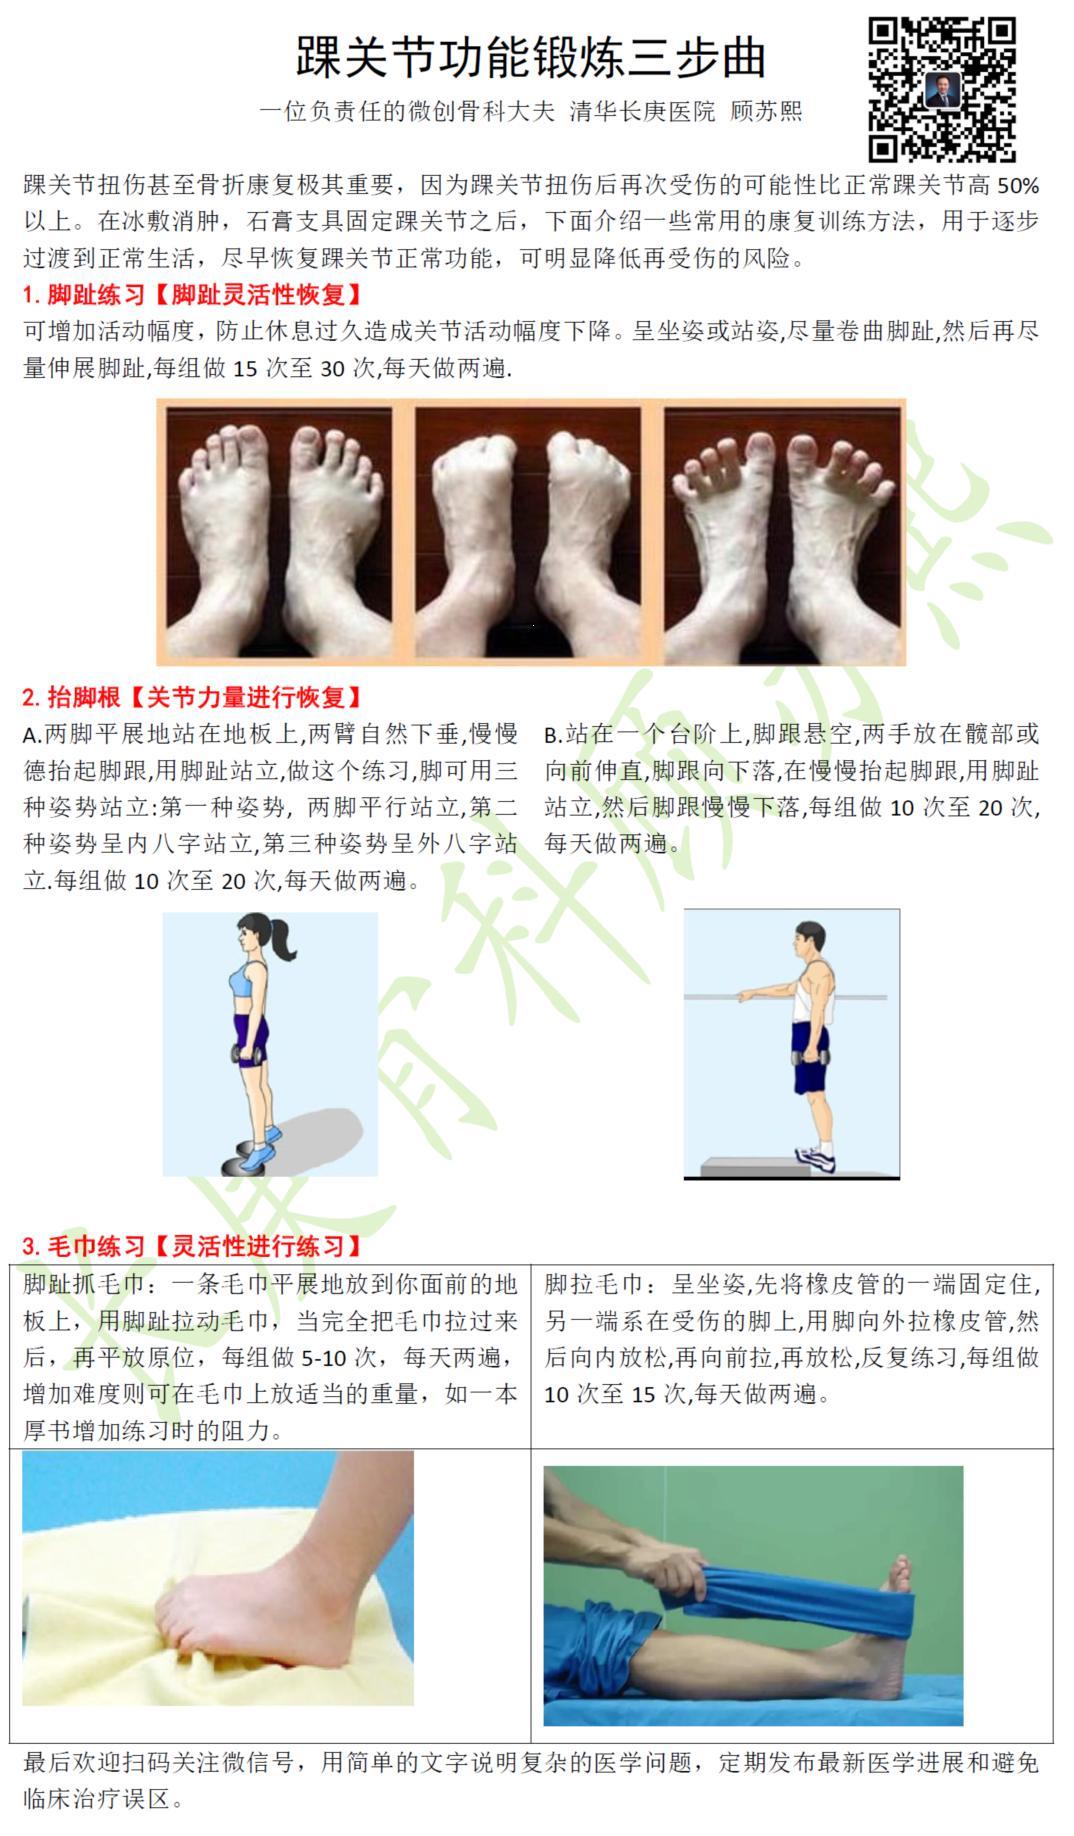 踝关节功能锻炼三步曲 扭伤骨折康复锻炼图谱 (原创)